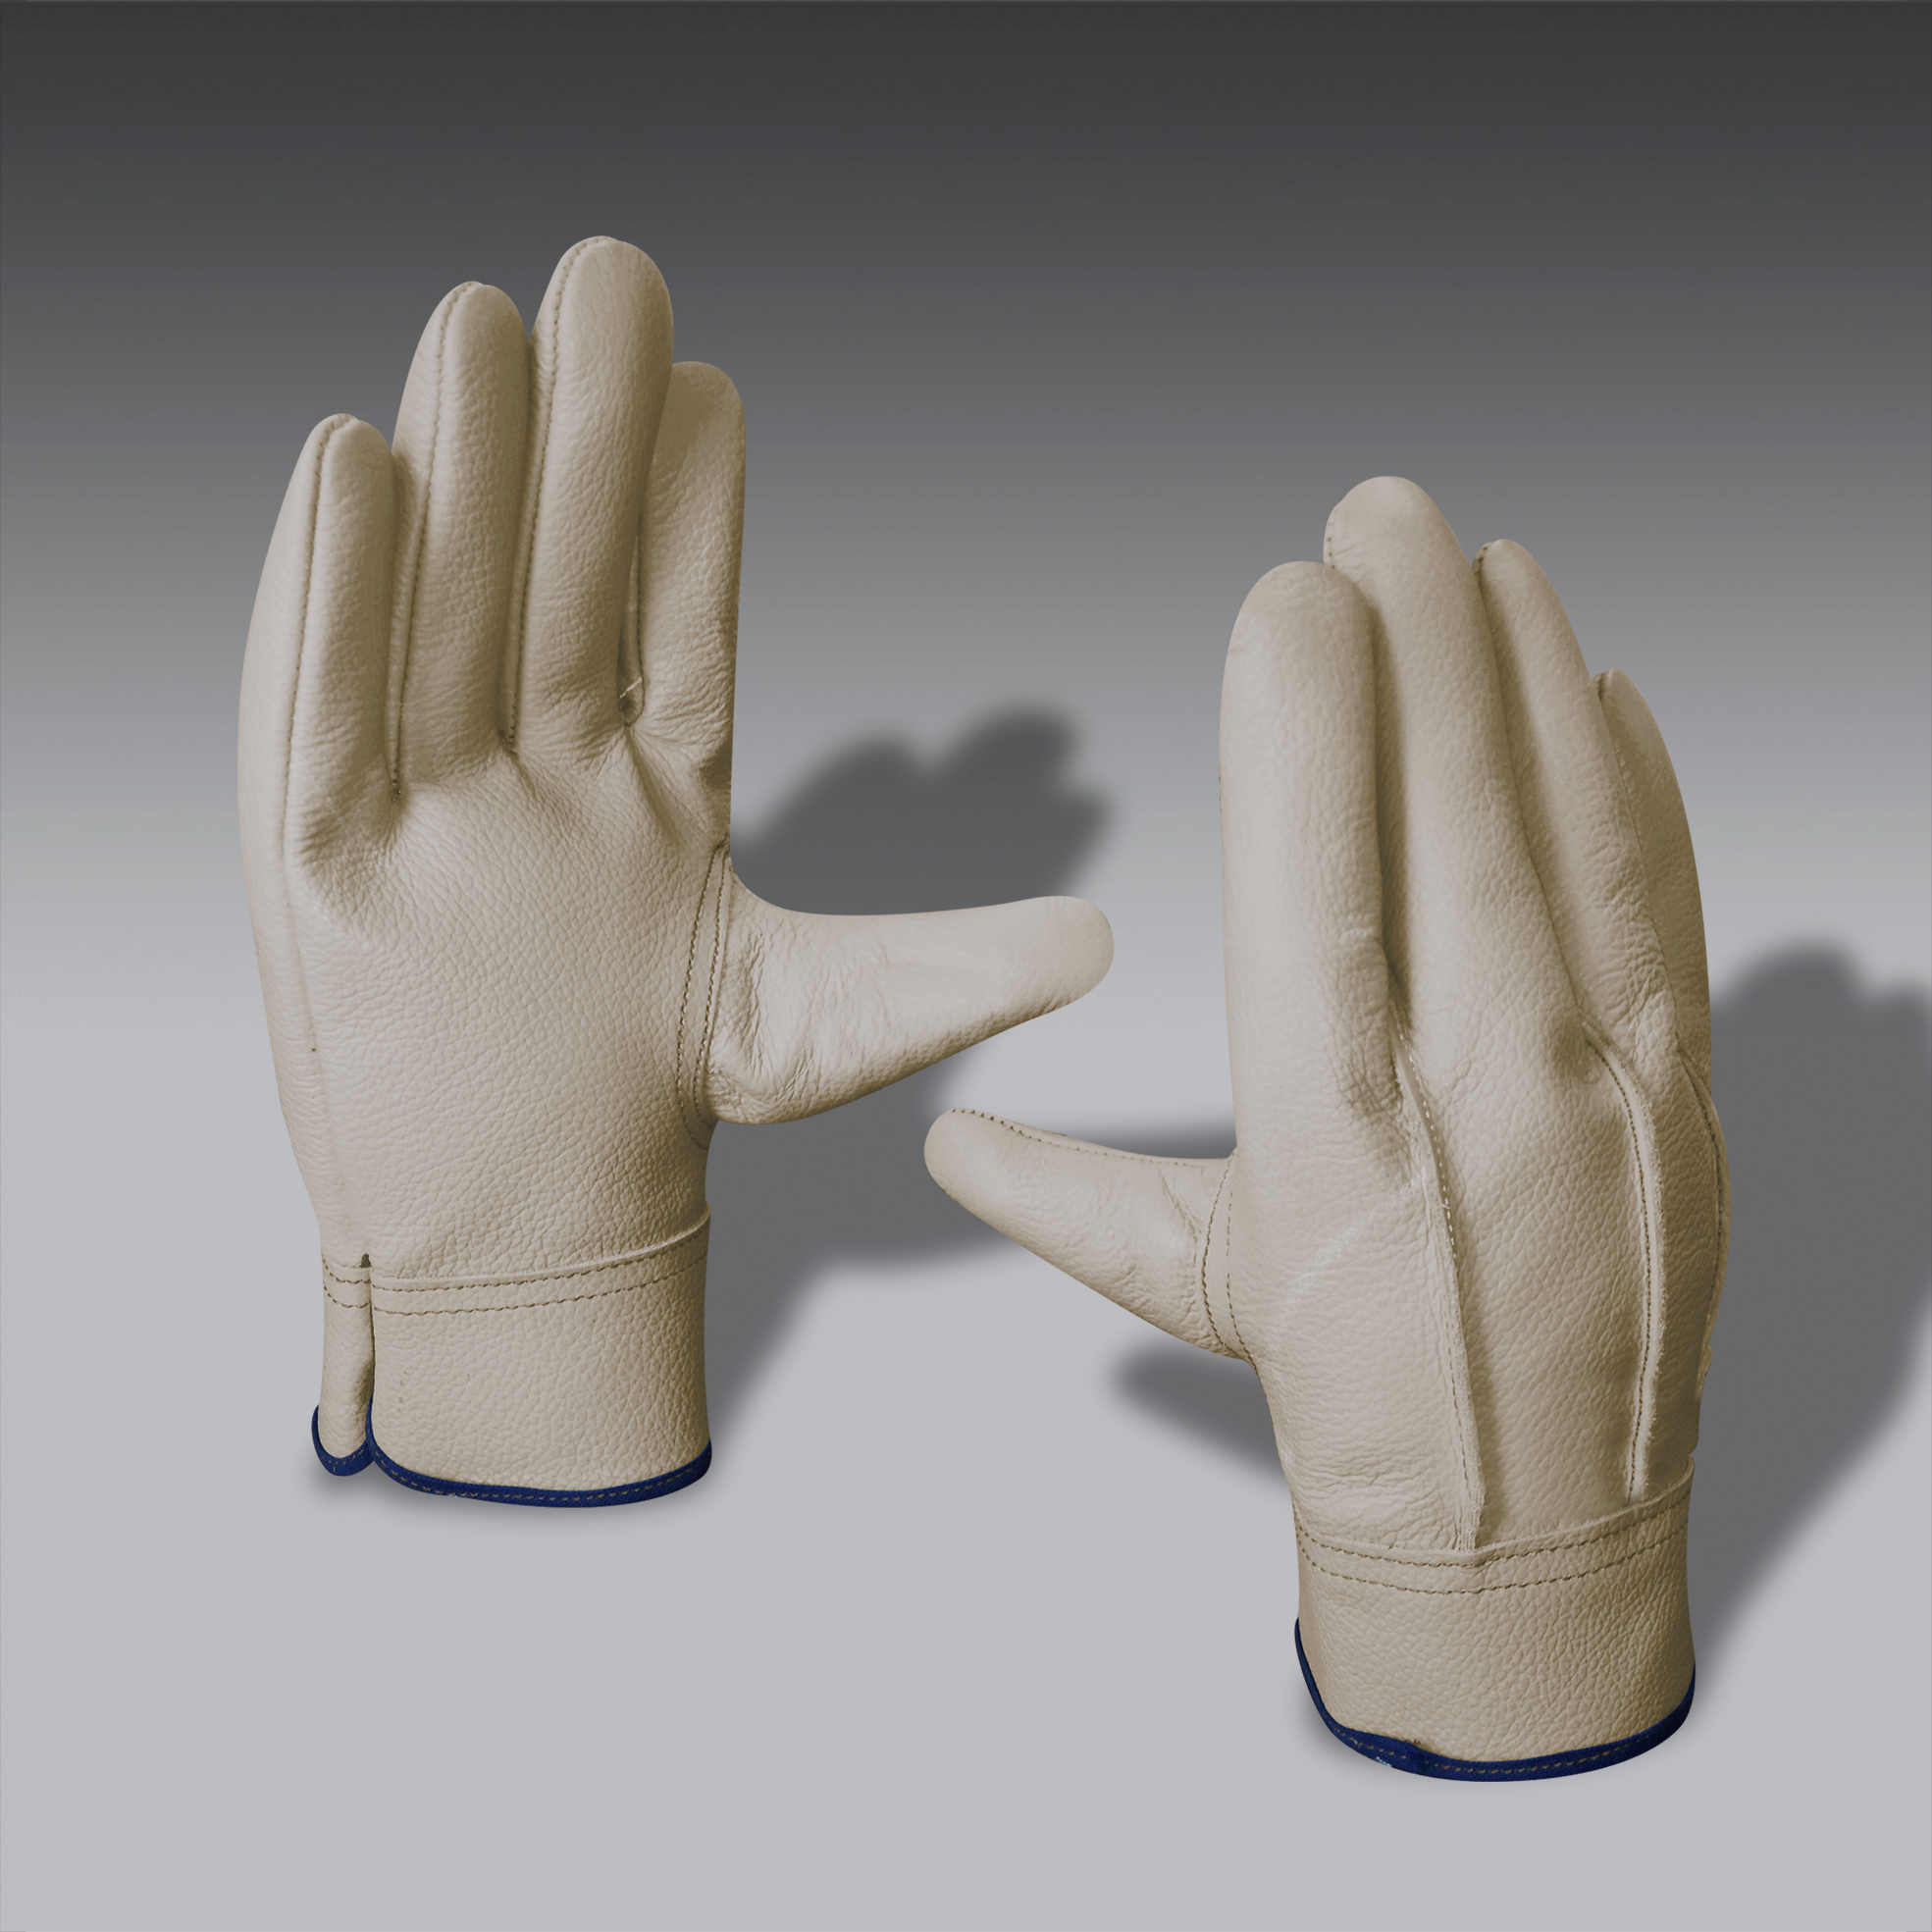 guantes para la seguridad industrial modelo ElecEco 02 guantes de seguridad industrial modelo ElecEco 02